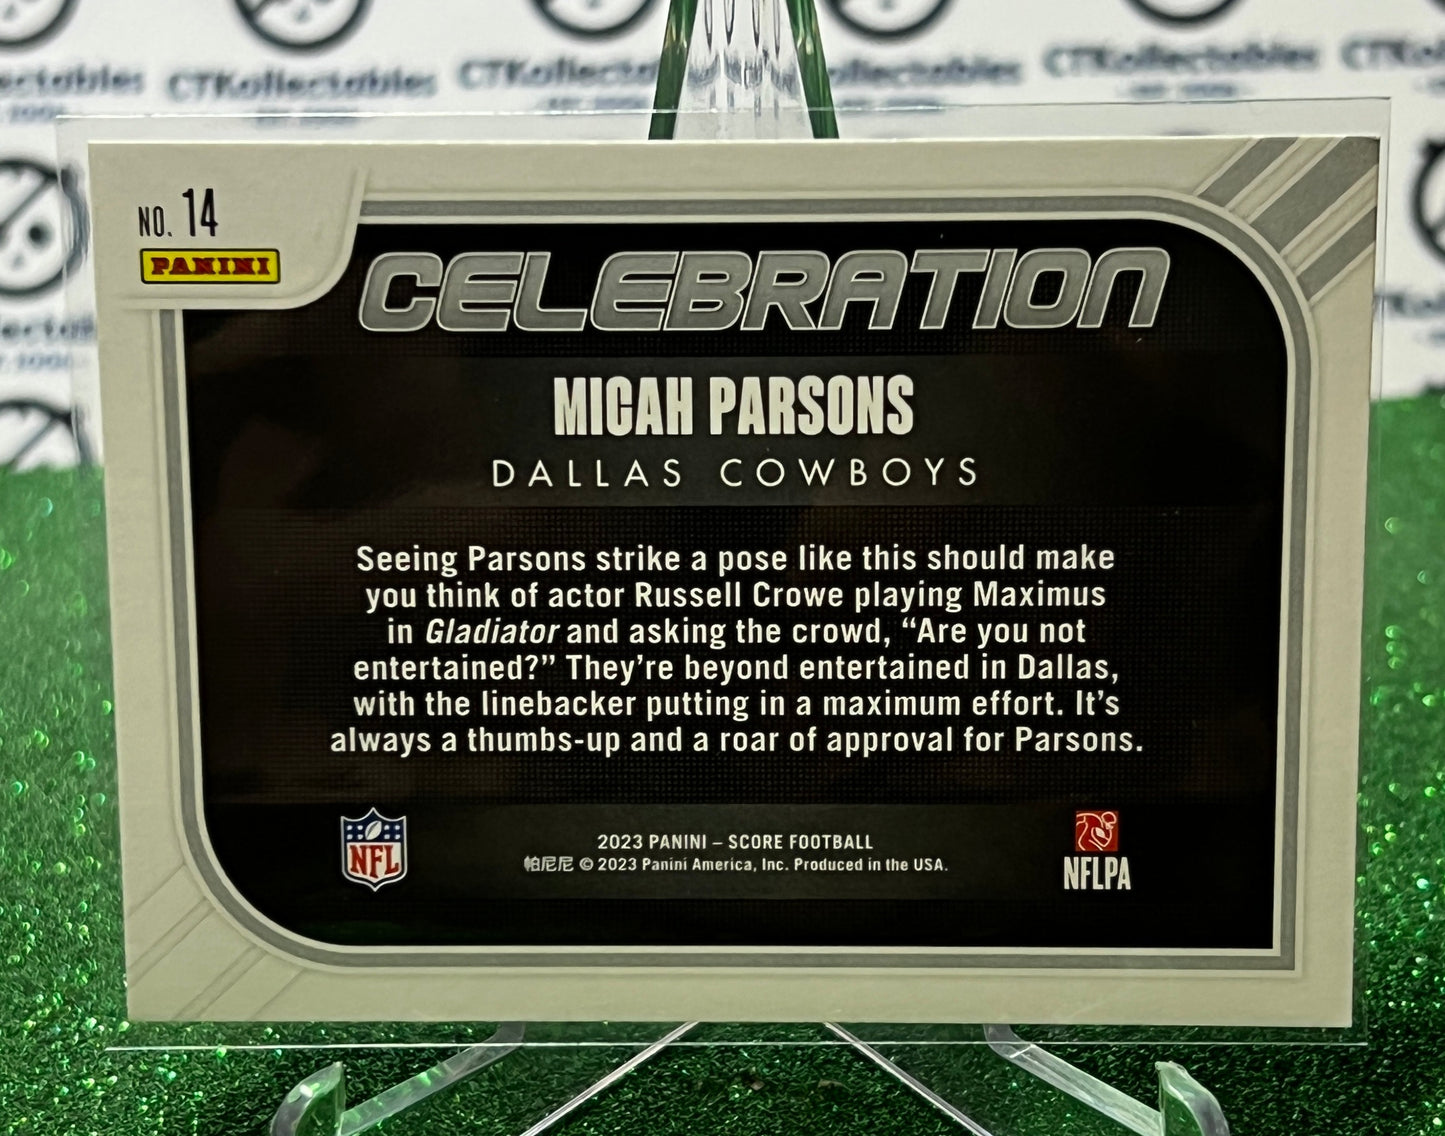 2023 PANINI SCORE MICAH PARSONS # 14 CELEBRATION NFL DALLAS COWBOYS GRIDIRON CARD